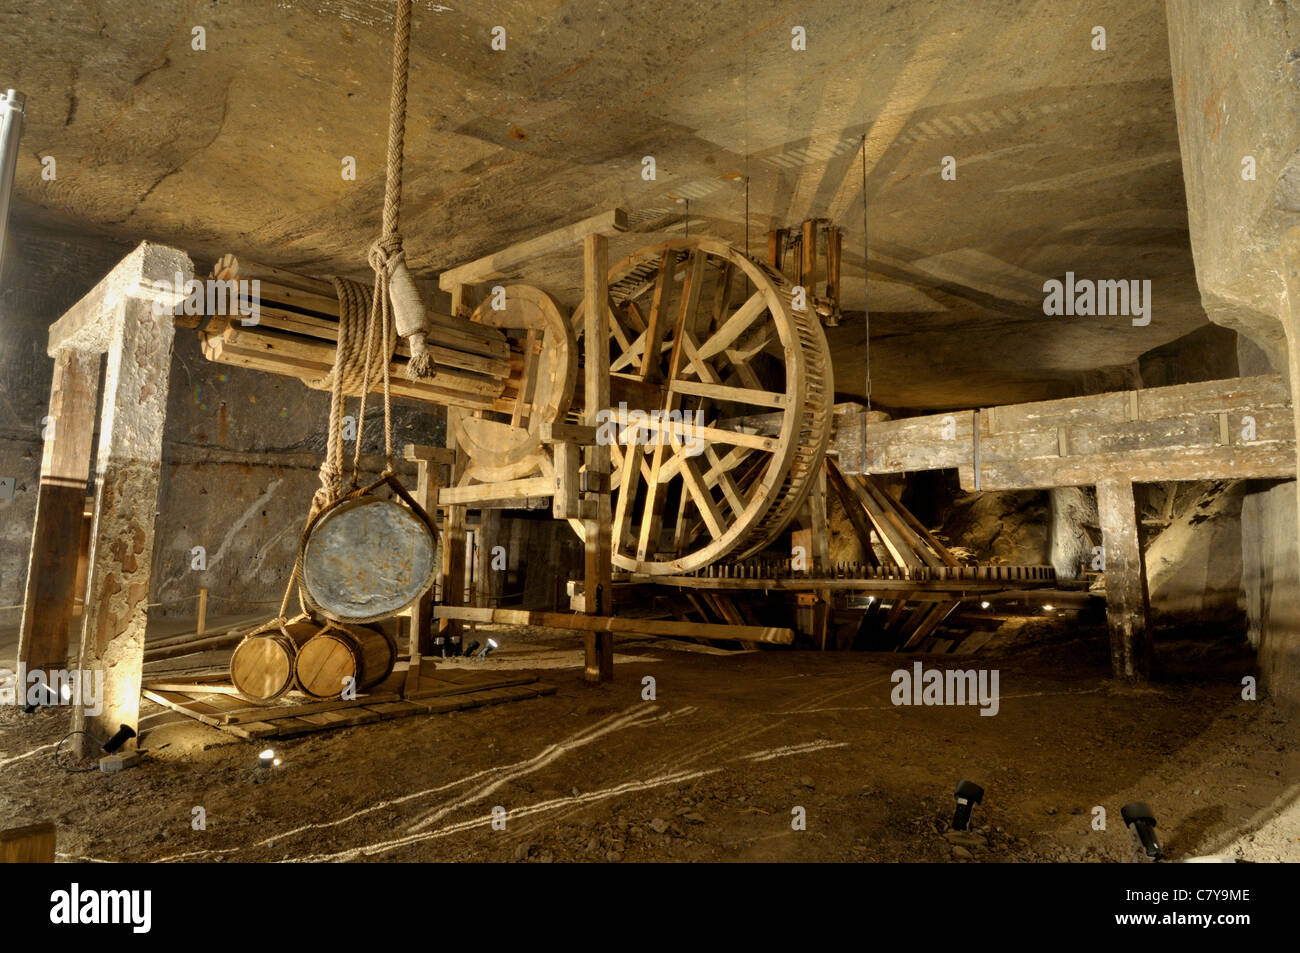 La mine de sel de Wieliczka souterrain historique des méthodes d'exploitation minière et les machines utilisées pour extraire le sel de la mine de roche Banque D'Images